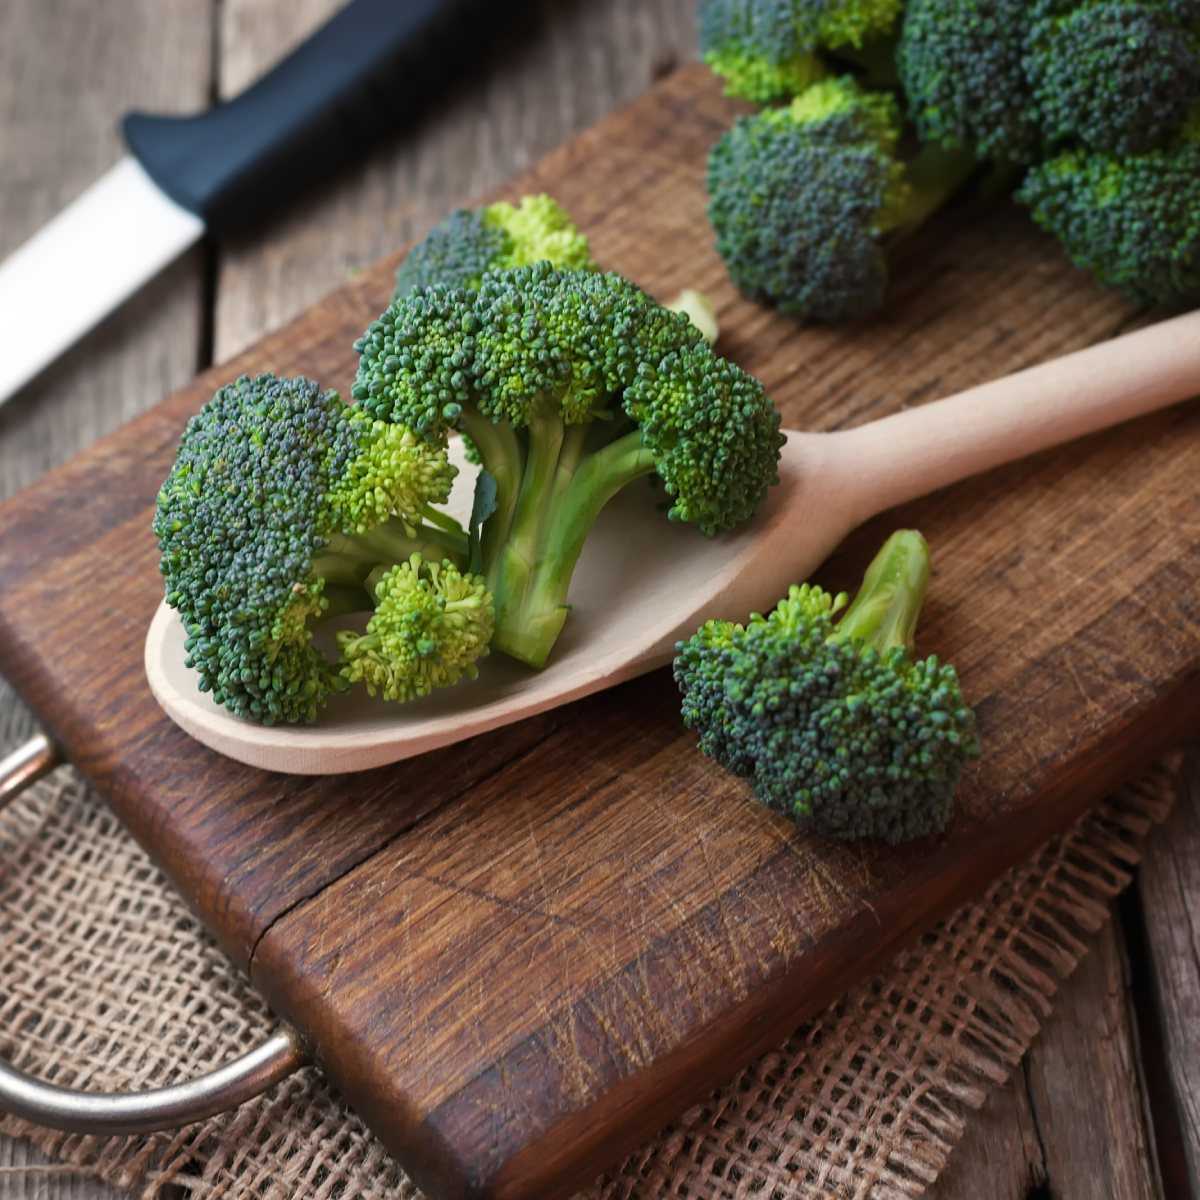 Капуста брокколи: химический состав, содержание витаминов, лечебные свойства, польза и вред, противопоказания, как правильно готовить